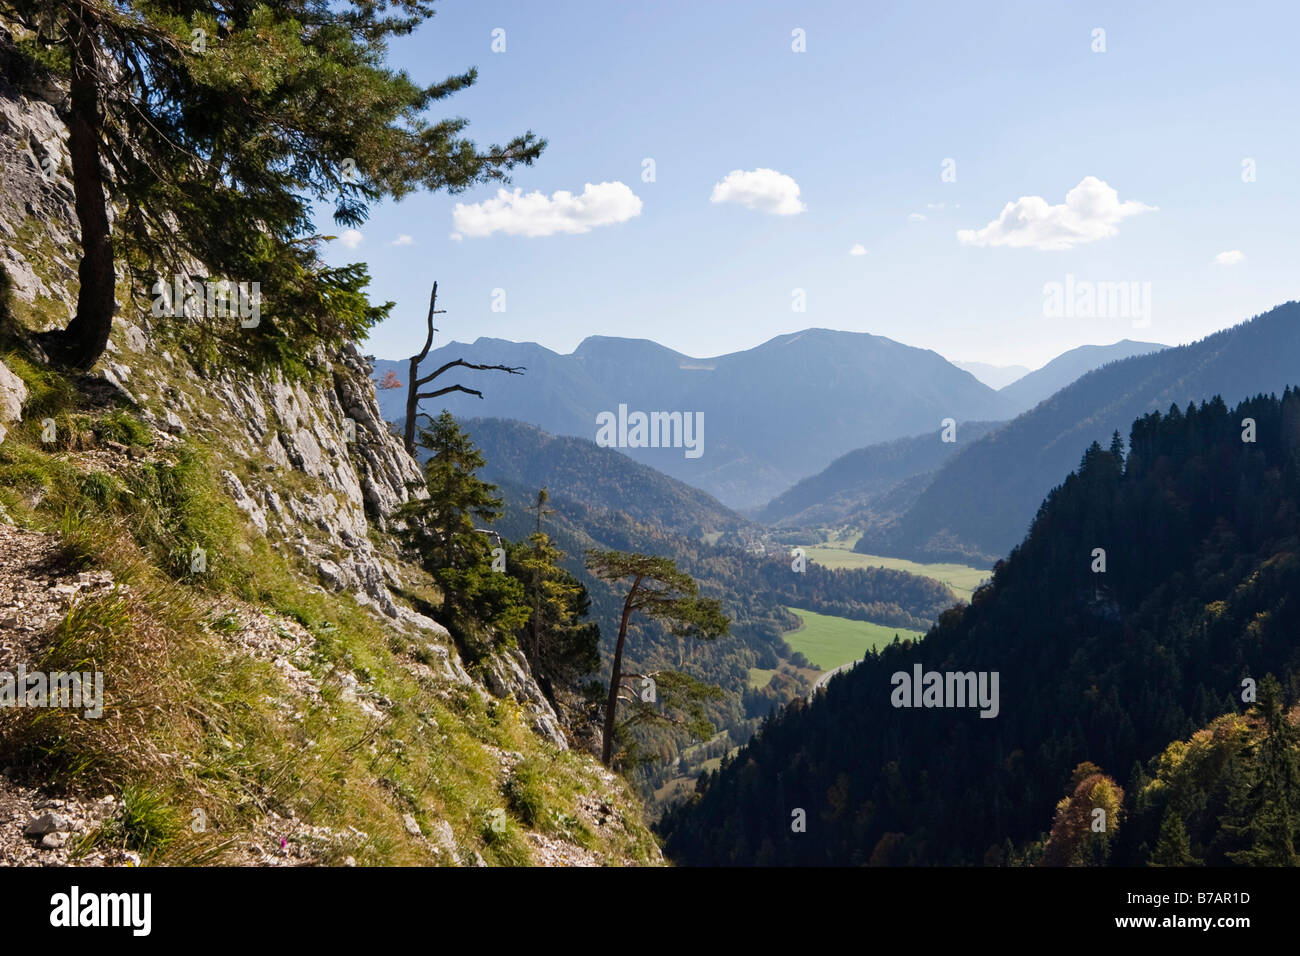 Blick vom Kofel Mountain auf der Suche nach Osten, Ammergauer Alpen, Upper Bavaria, Bavaria, Germany, Europe Stockfoto